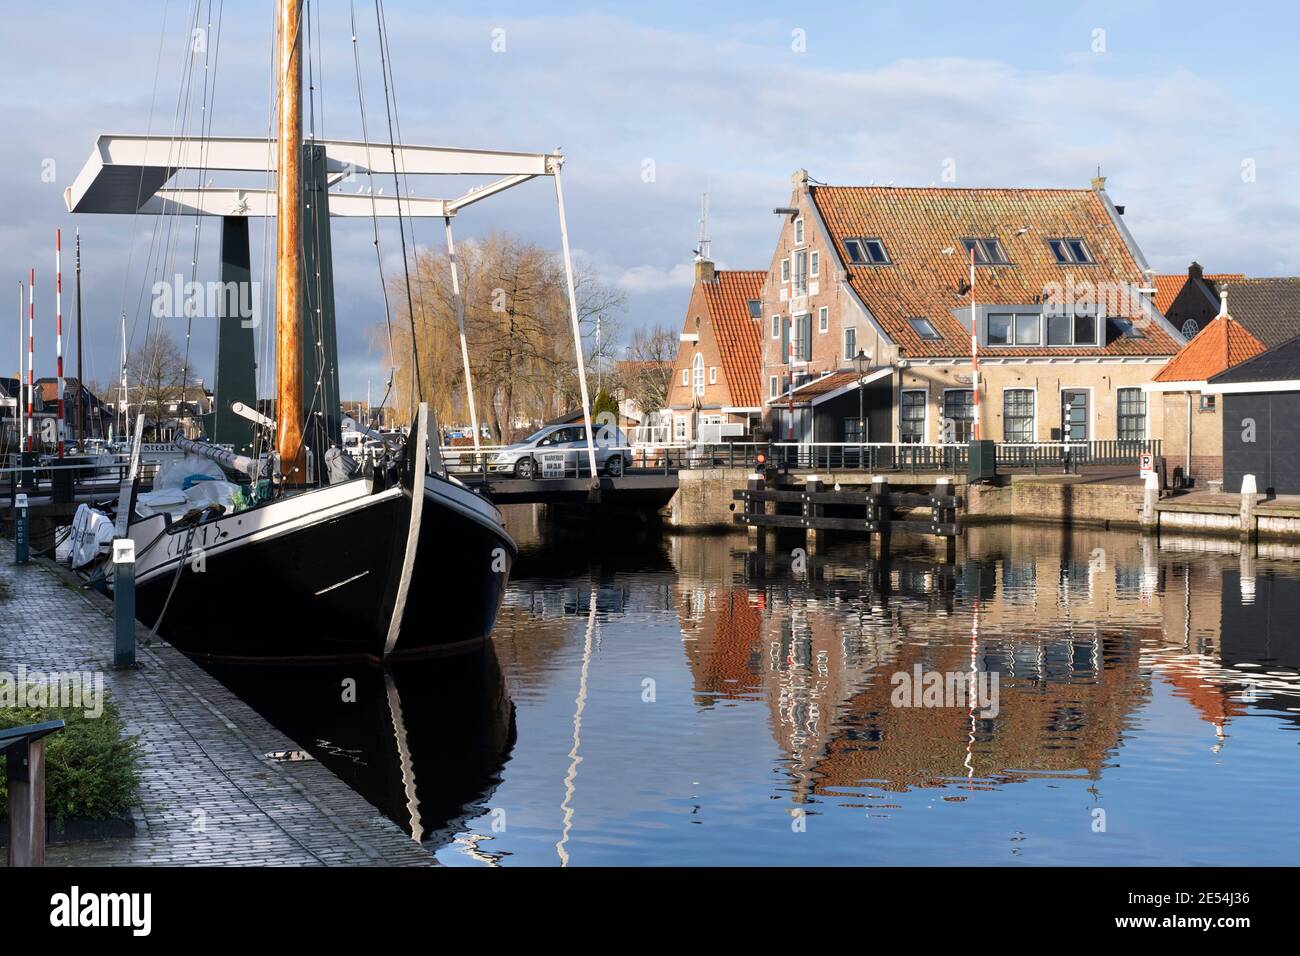 Città di Lemmer, Paesi Bassi, con Flevobrug e un grande yacht a vela sulla sinistra e un magazzino storico sulla Zijlroede sulla destra Foto Stock